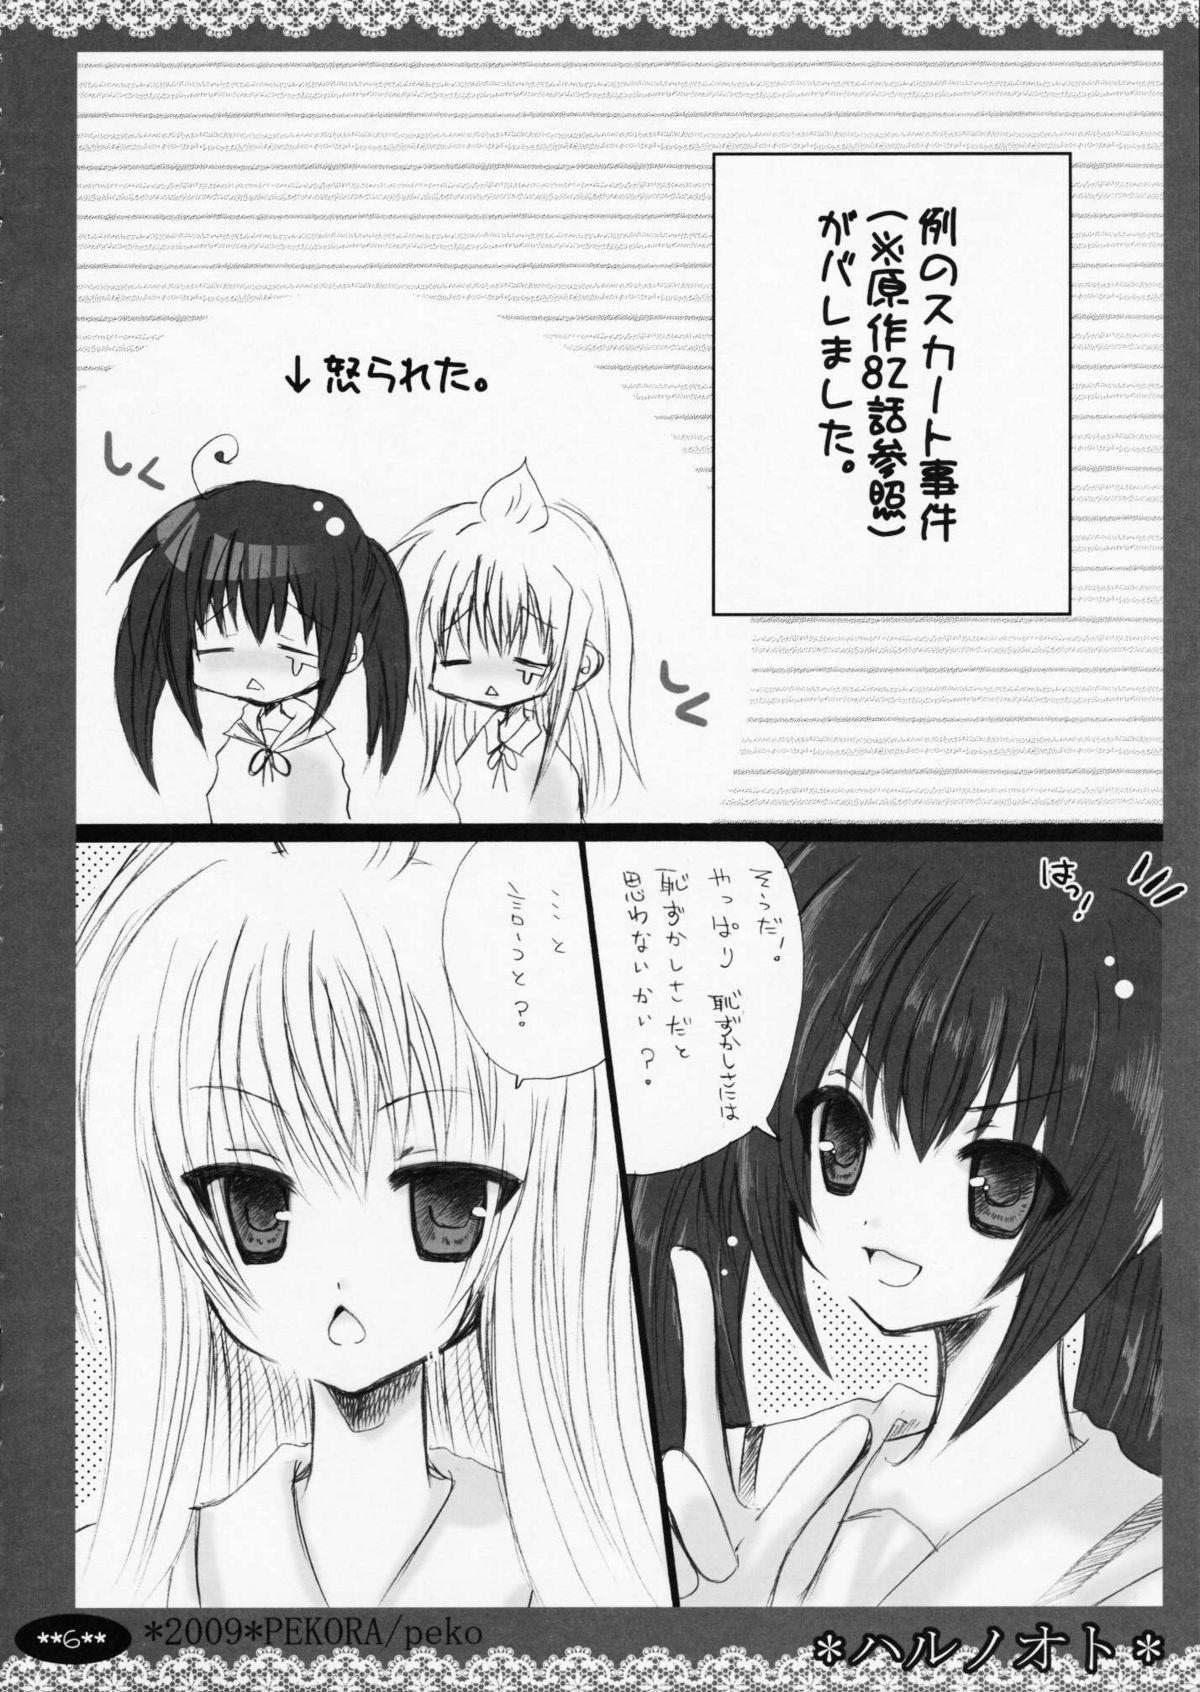 Flaca Haru no Oto - Minami-ke Nylons - Page 6